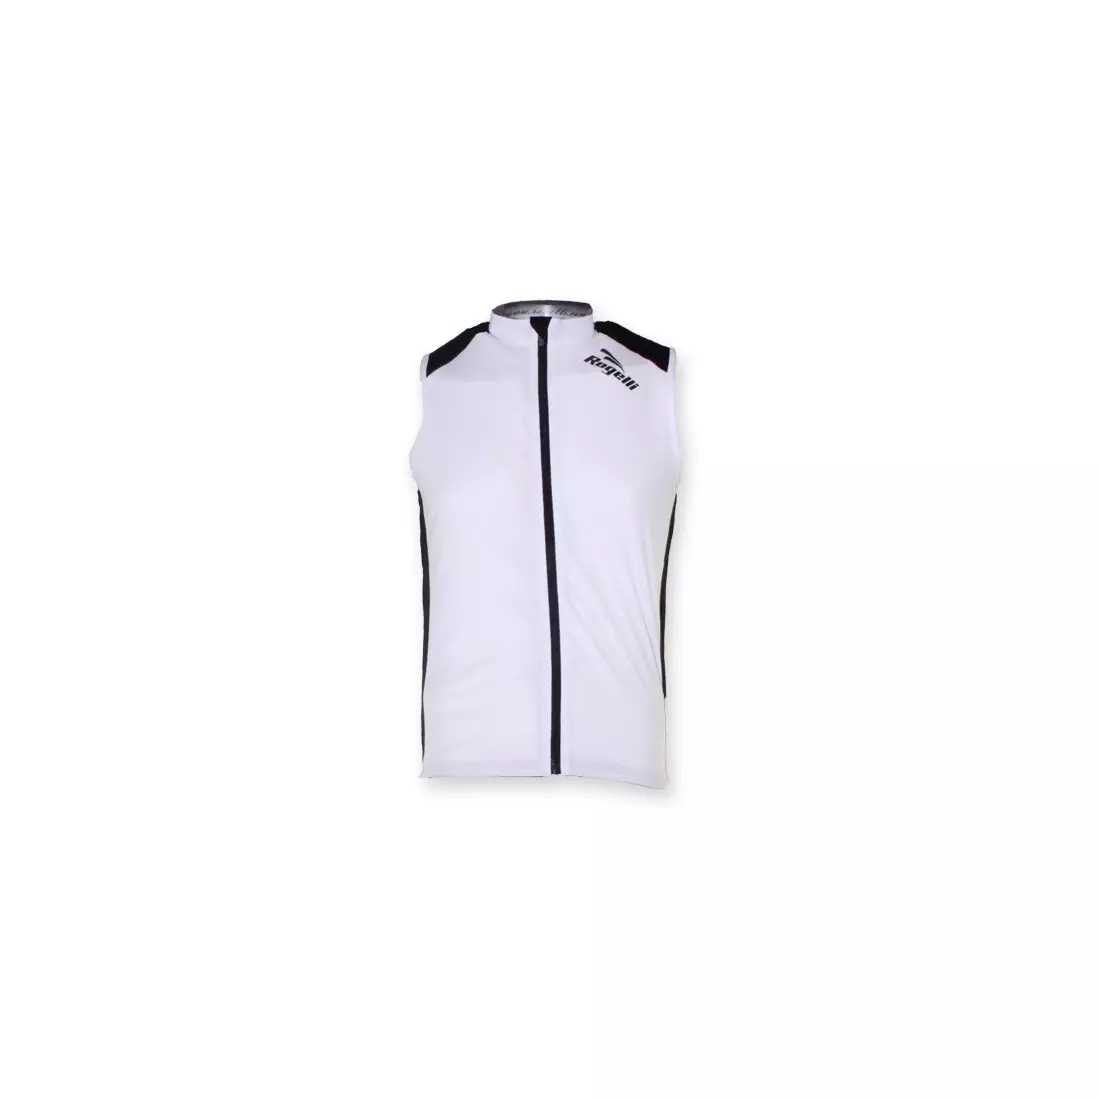 ROGELLI POLINO - pánsky cyklistický dres bez rukávov, farba: biela a čierna